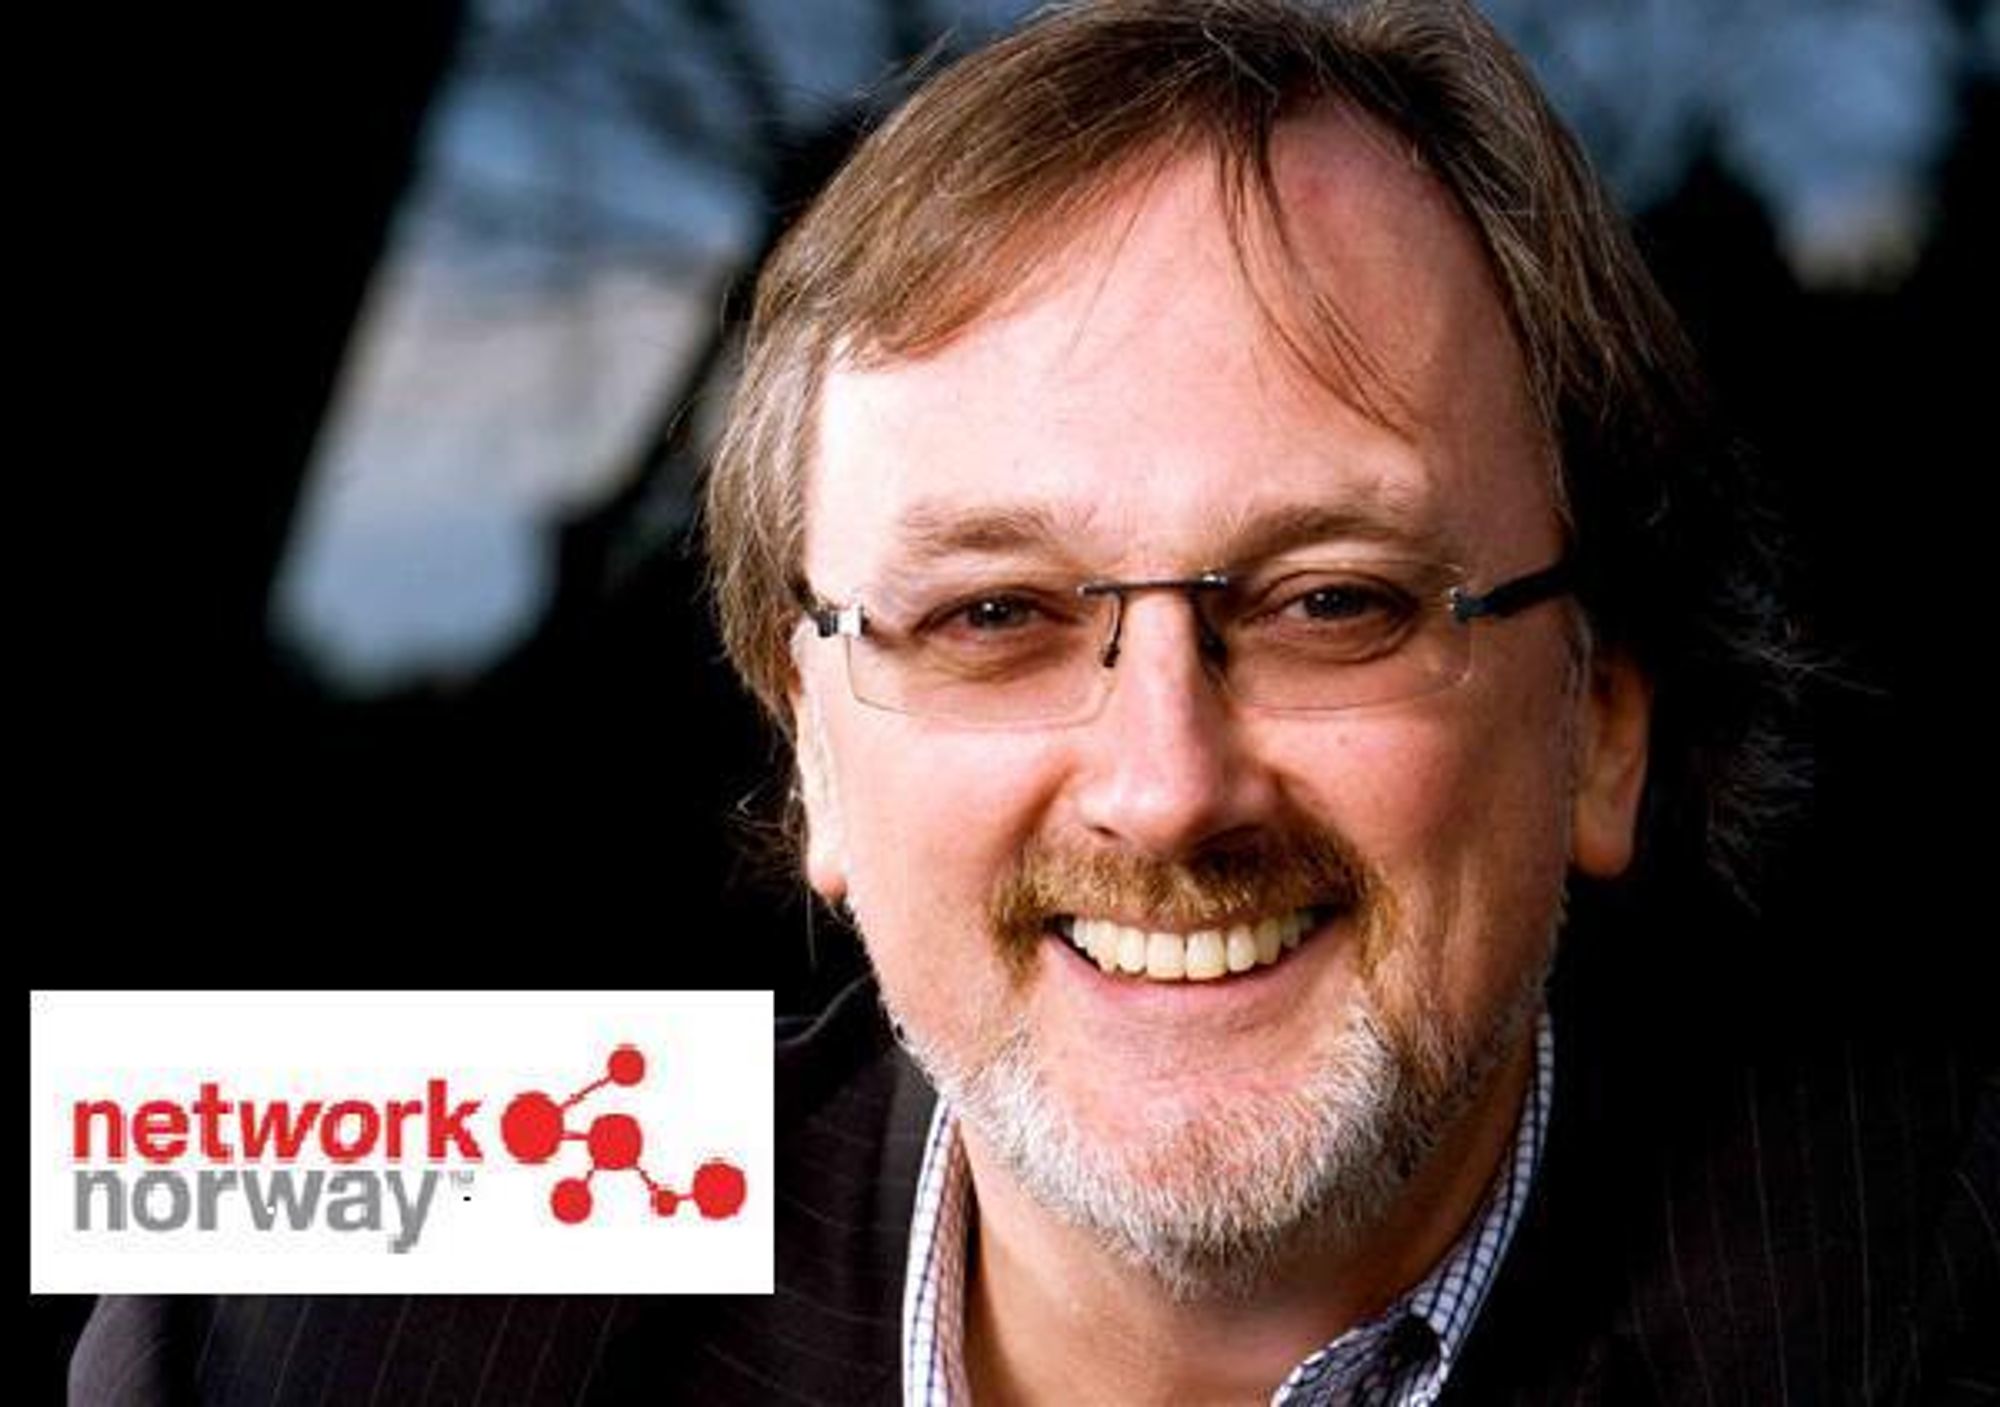 BEROLIGER: Network Norway er ikke på gyngende grunn, understreker direktør for samfunnskontakt i selskapet, Tom Guldberg.